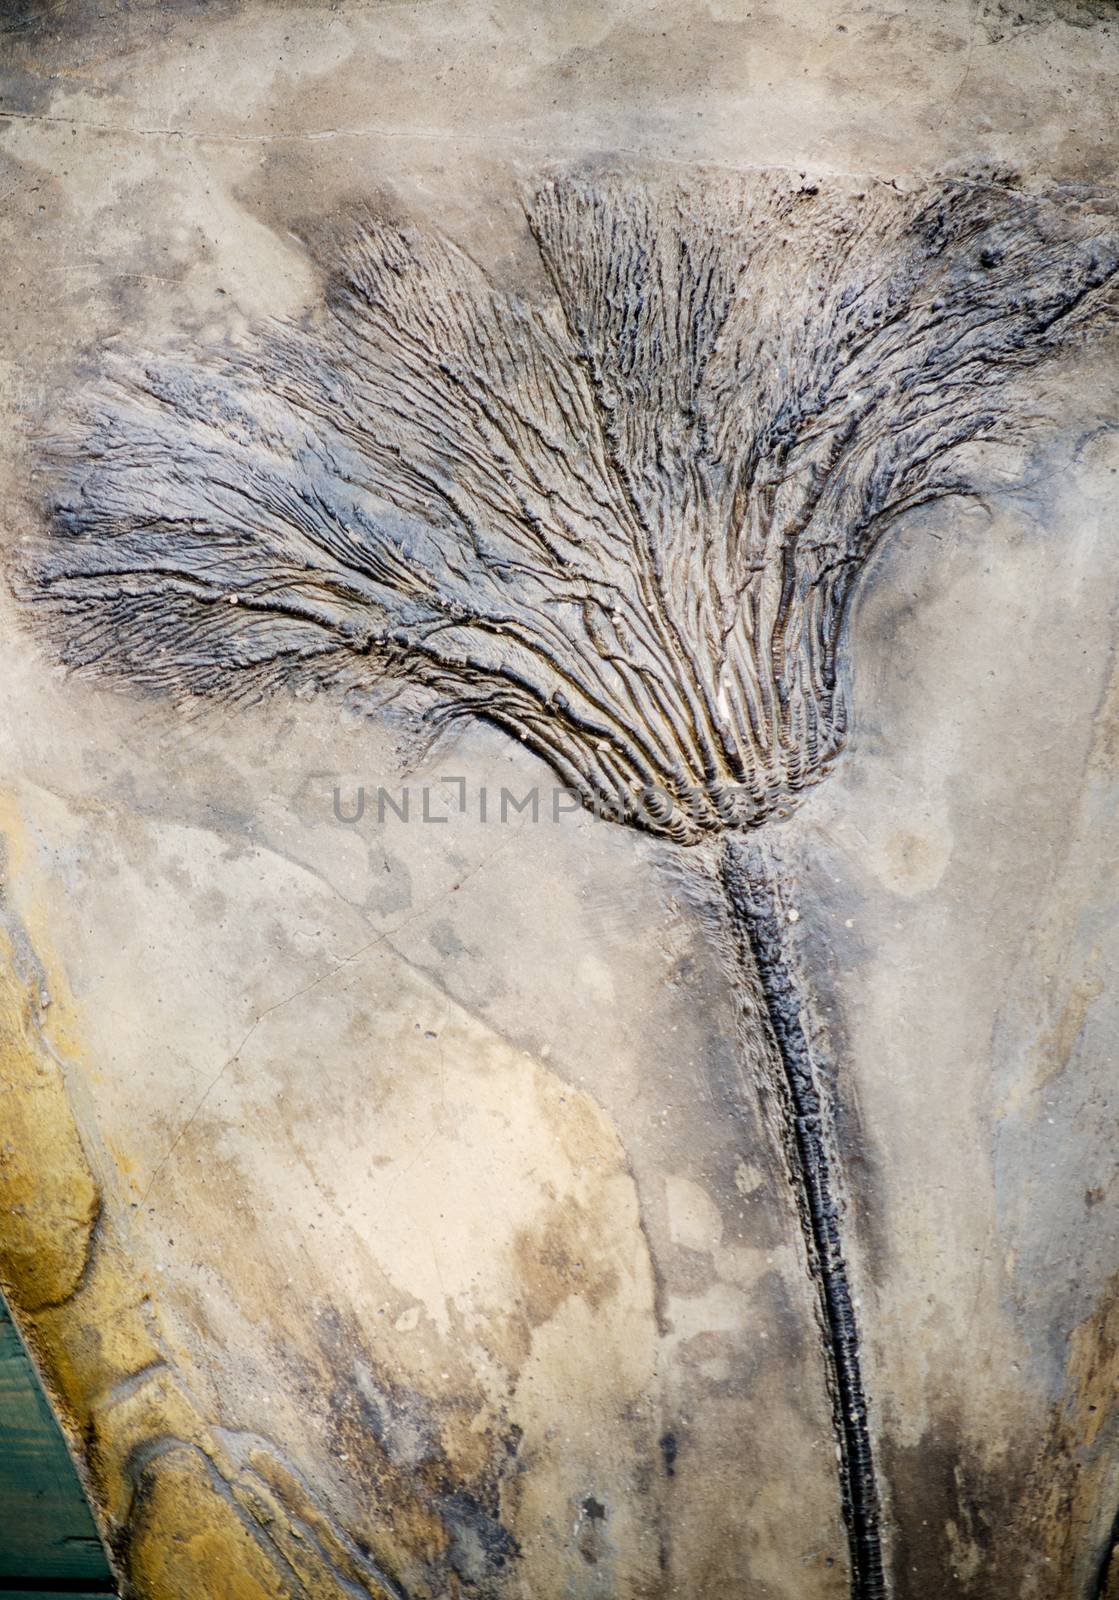 Seirocrinus subangularis  fossil by sarkao